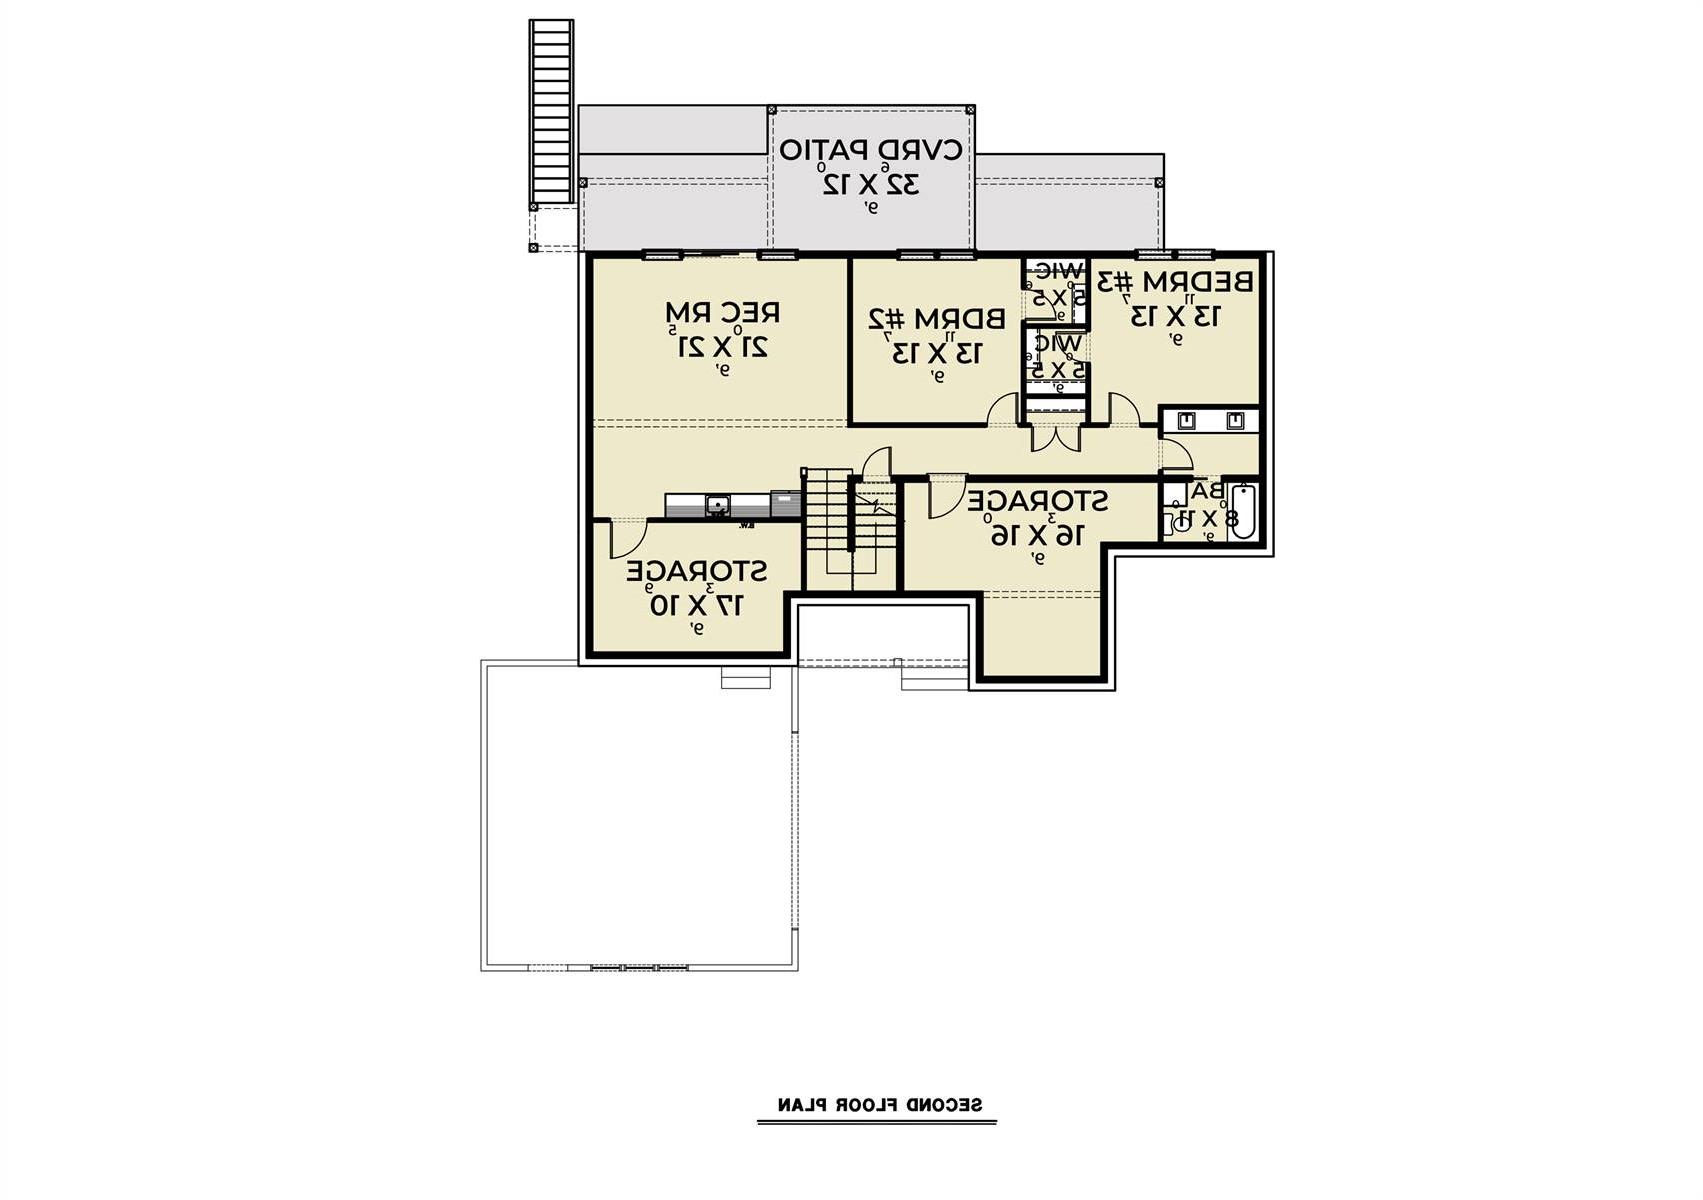 Basement Plan image of Craftsman 393 House Plan